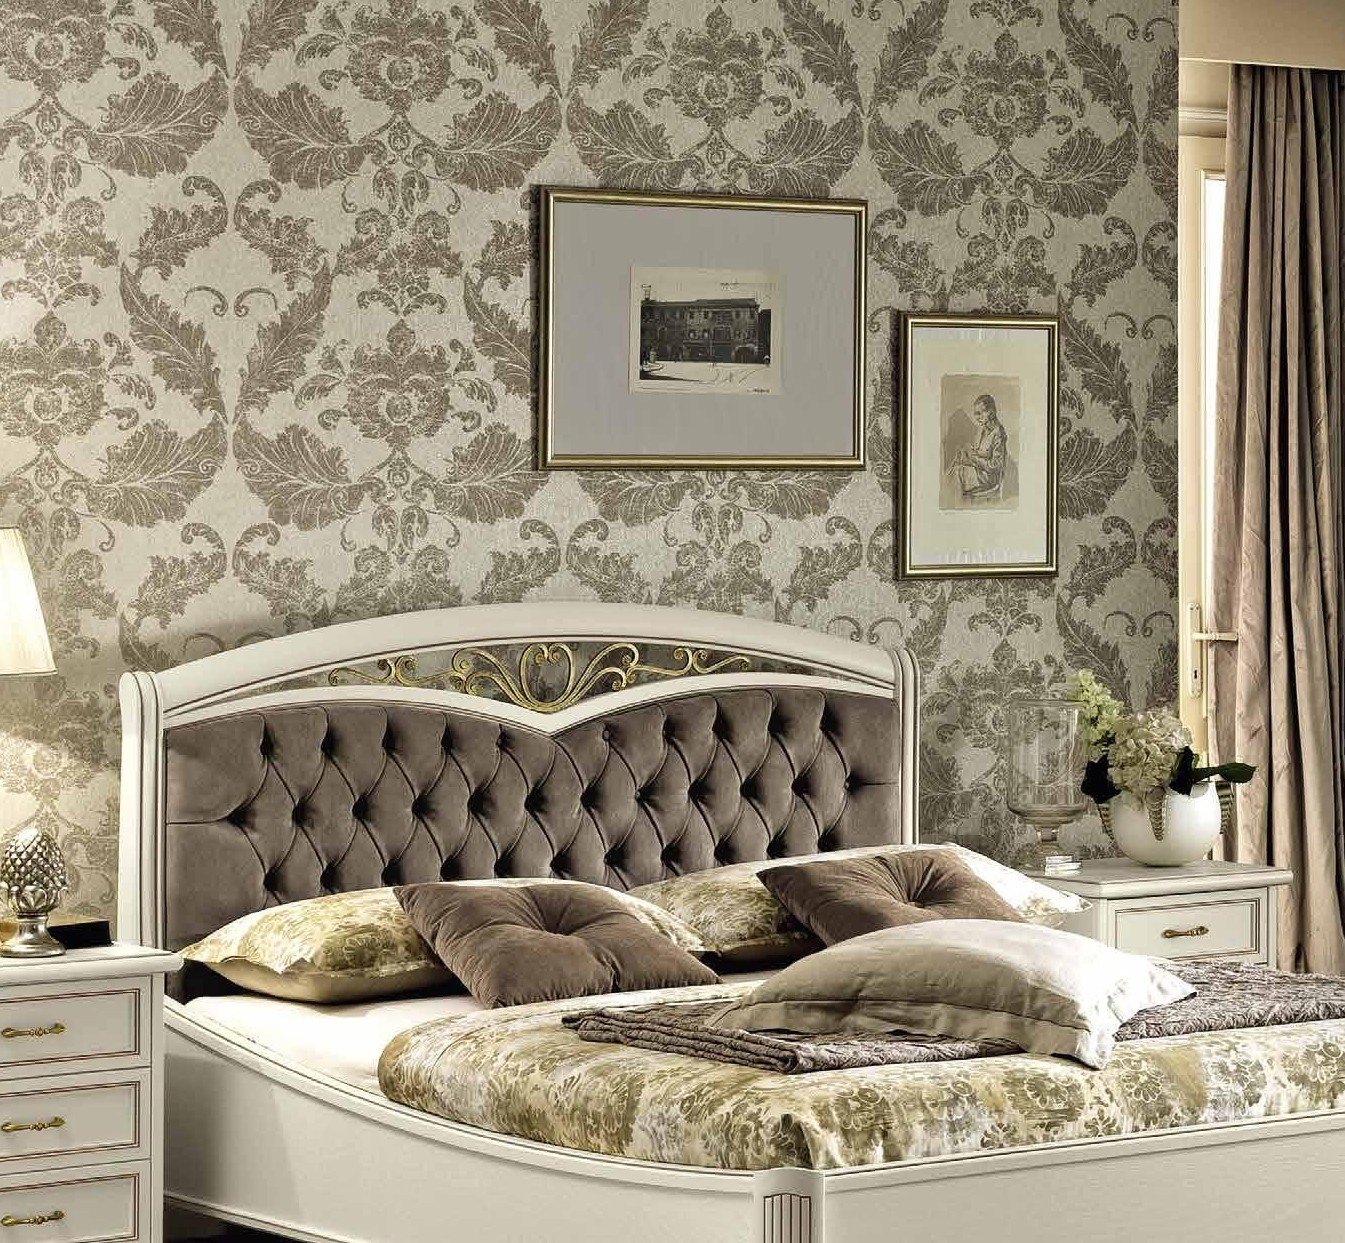 Кровать Nostalgia Ricordi, двуспальная, с мягким изголовьем, без изножья, цвет: белый антик, экокожа Nabuk 12, 160x200 см (142LET.20BA52)142LET.20BA52